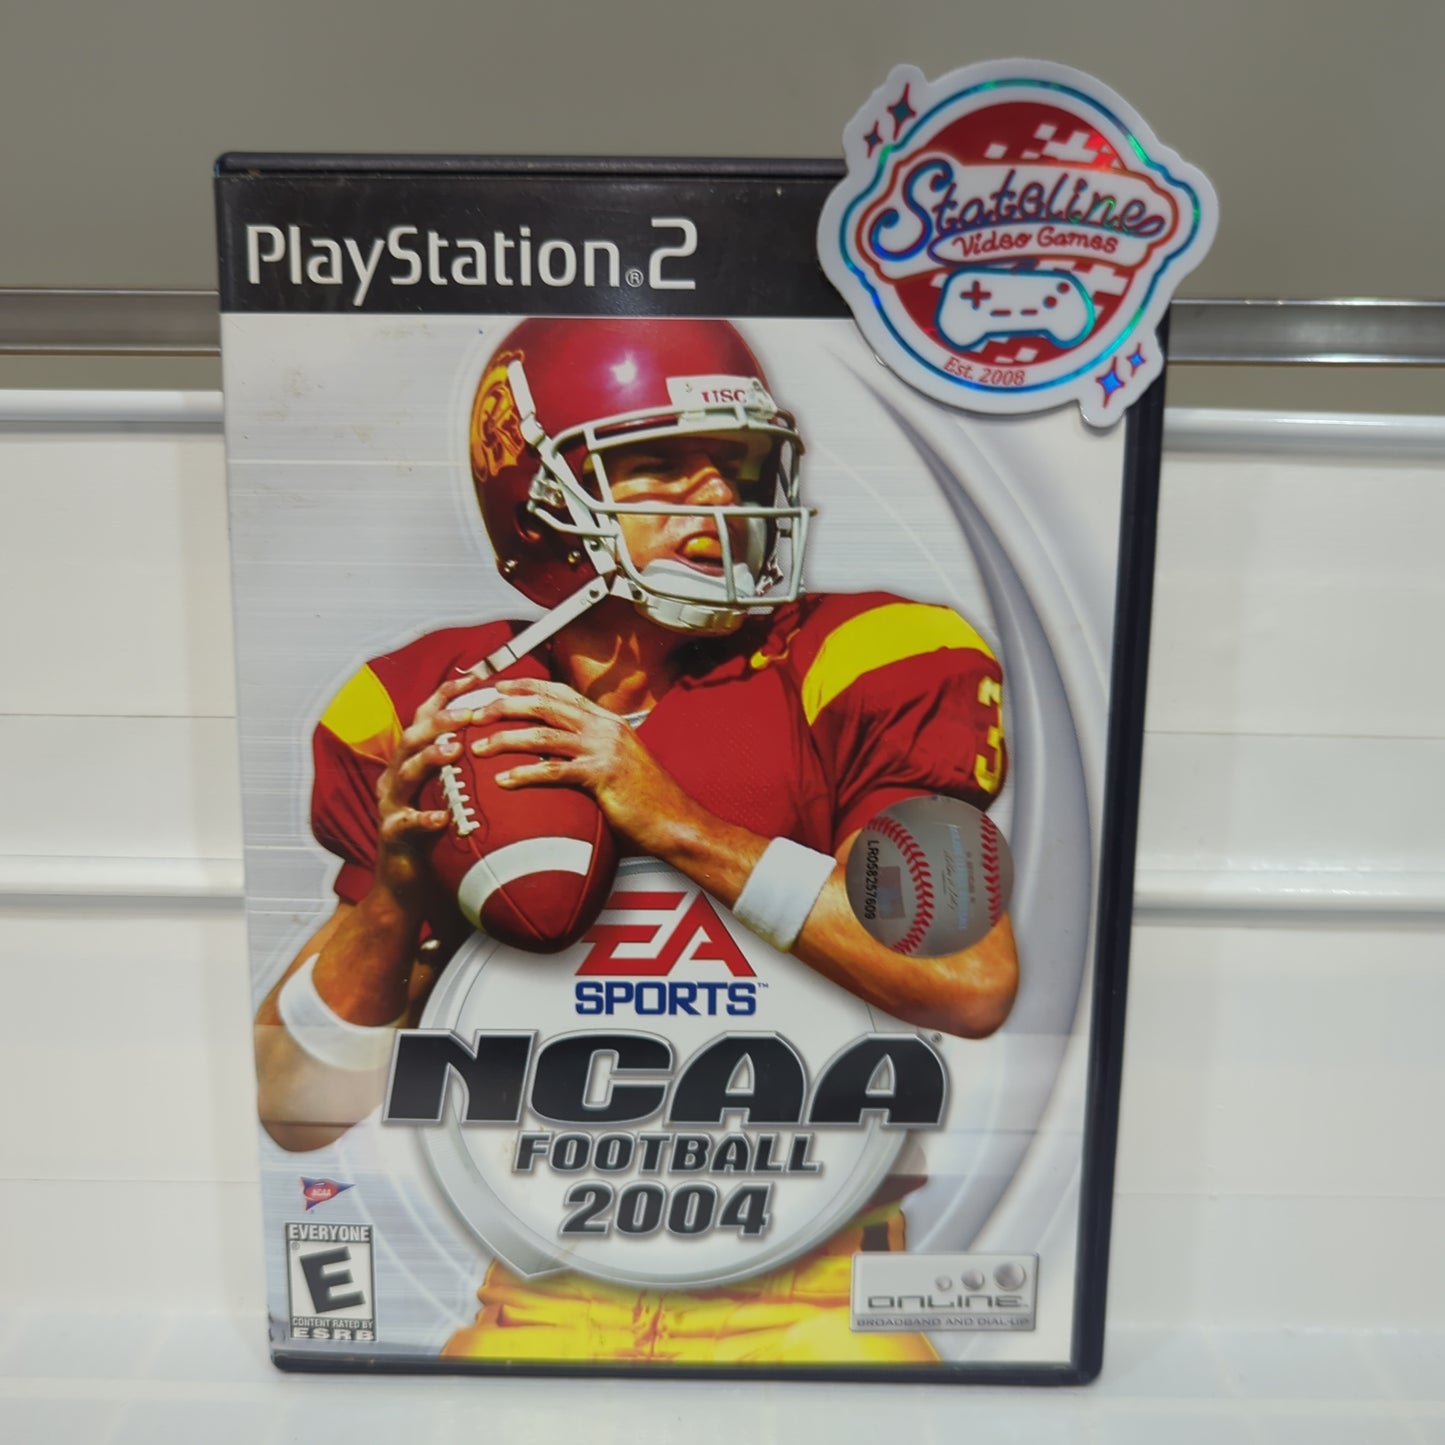 NCAA Football 2004 - Playstation 2